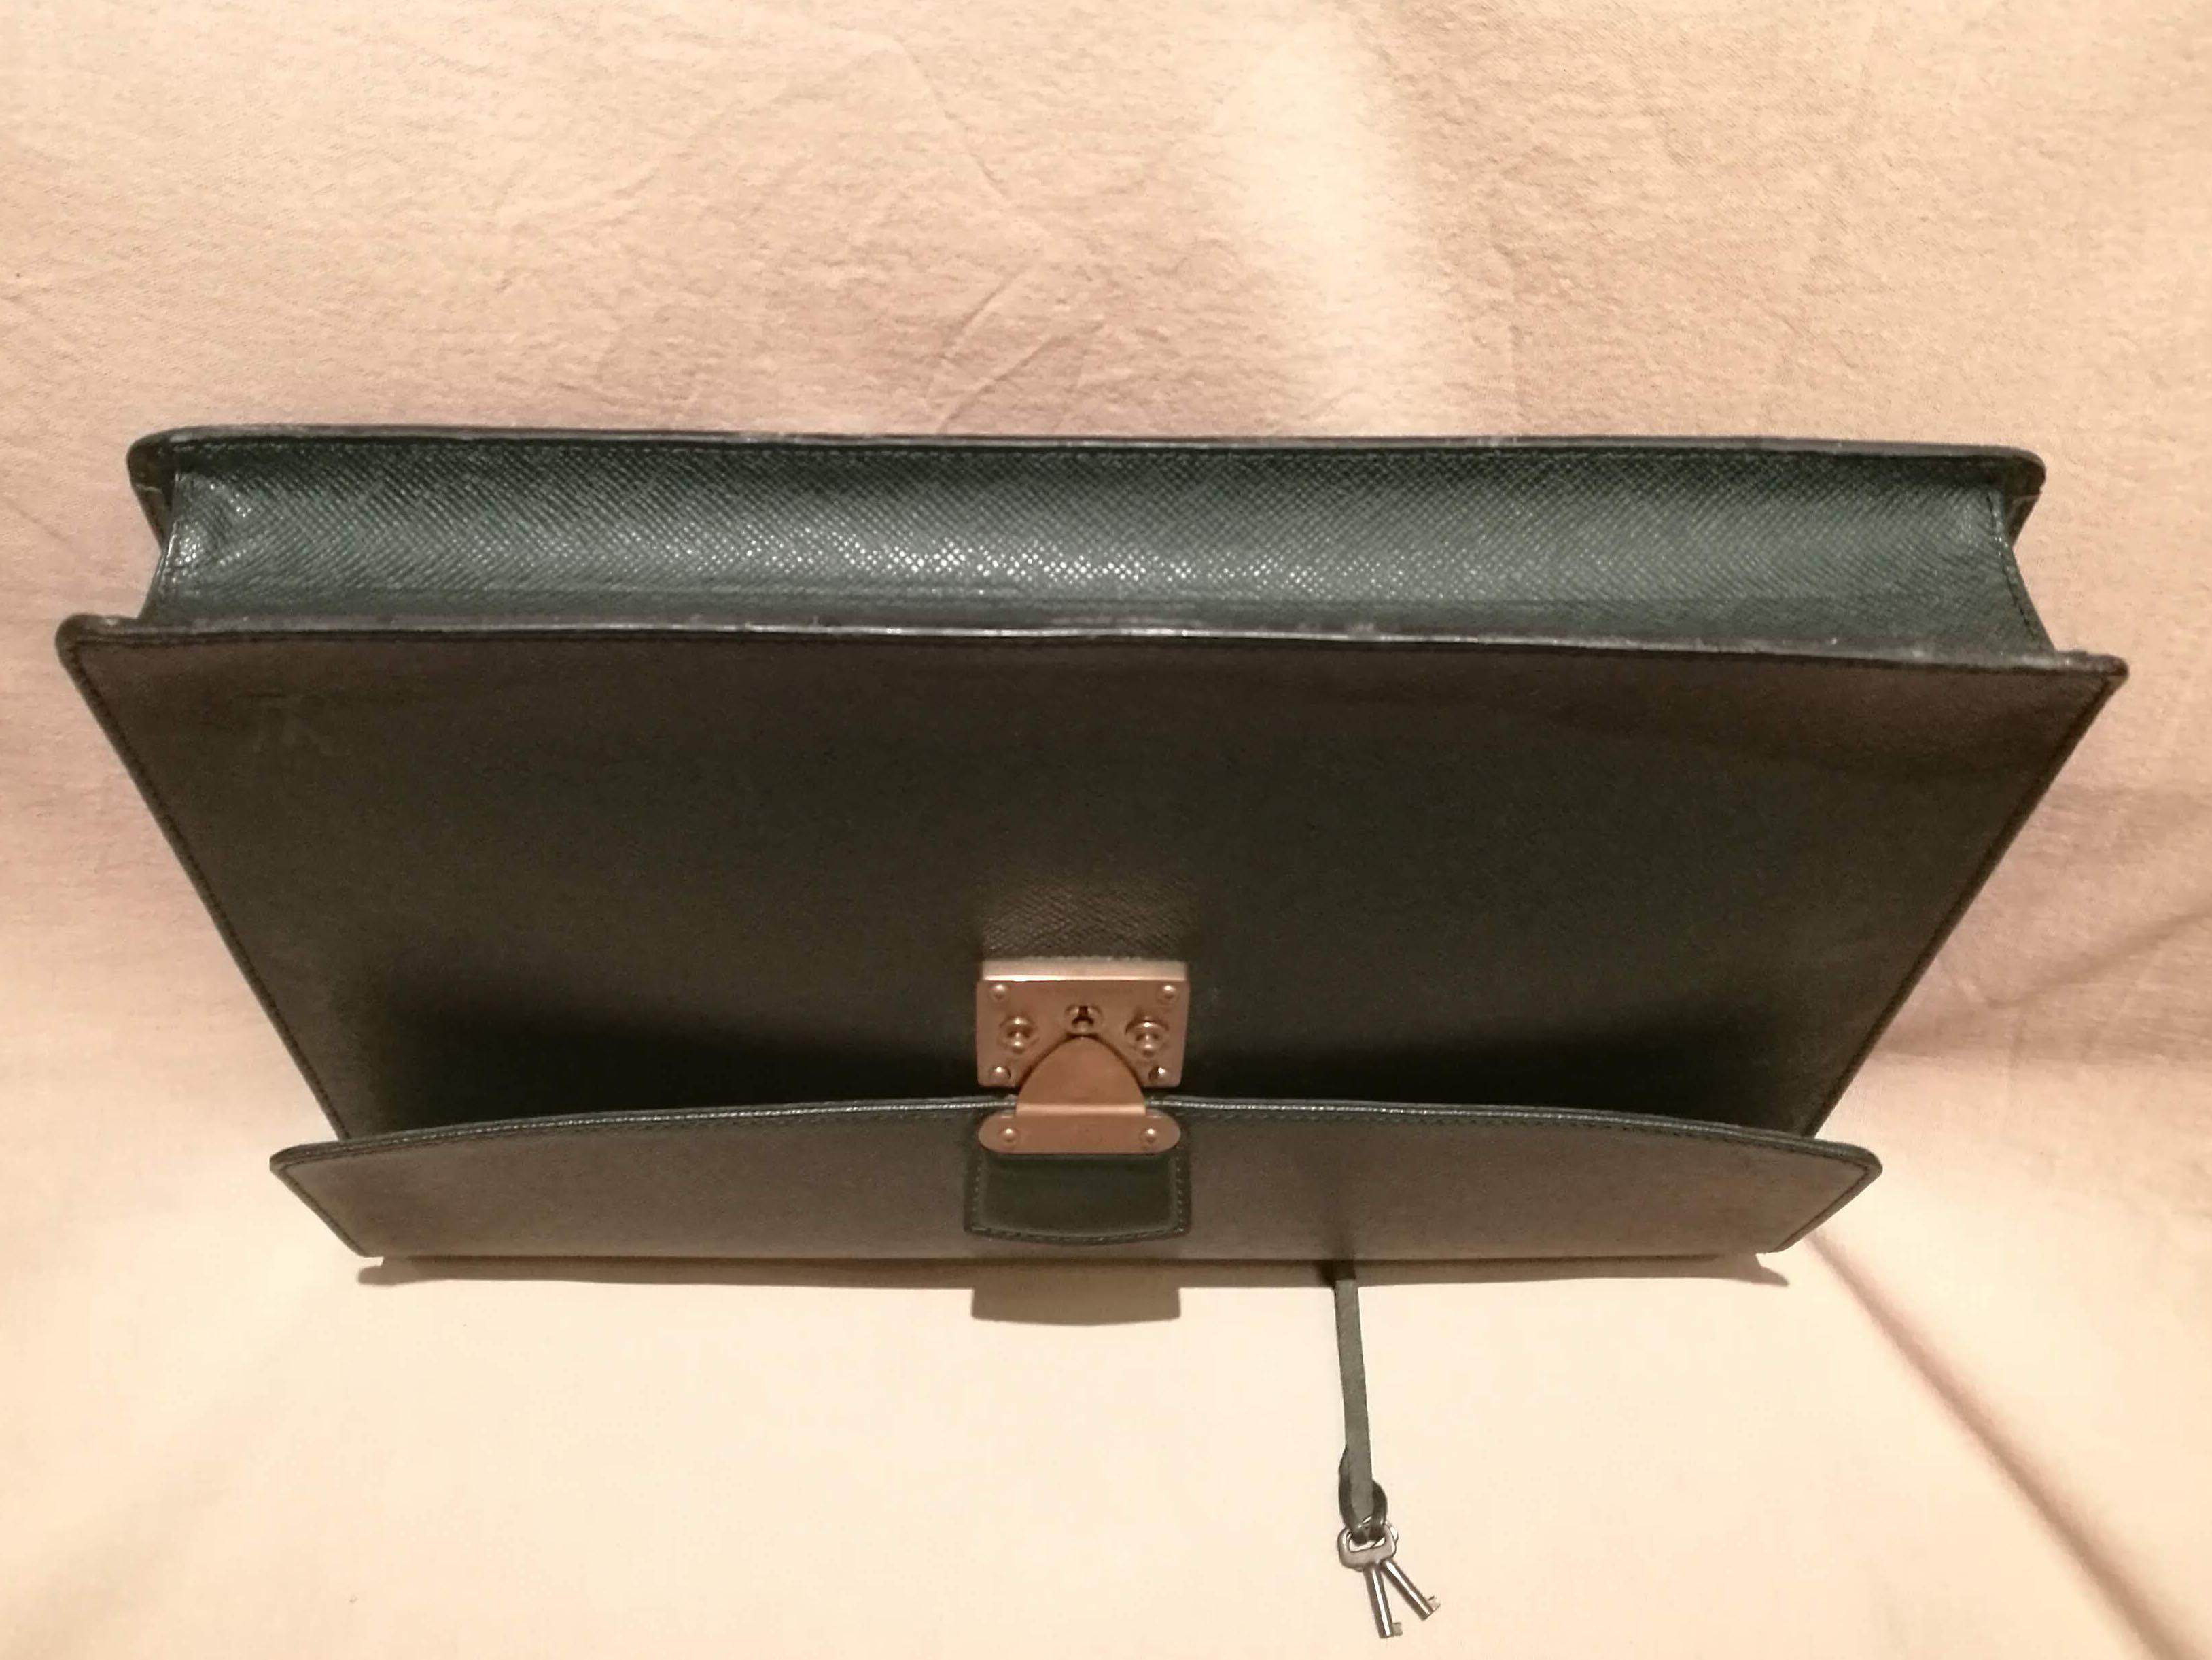 Louis Vuitton Taiga Kourad Briefcase - Green Briefcases, Bags